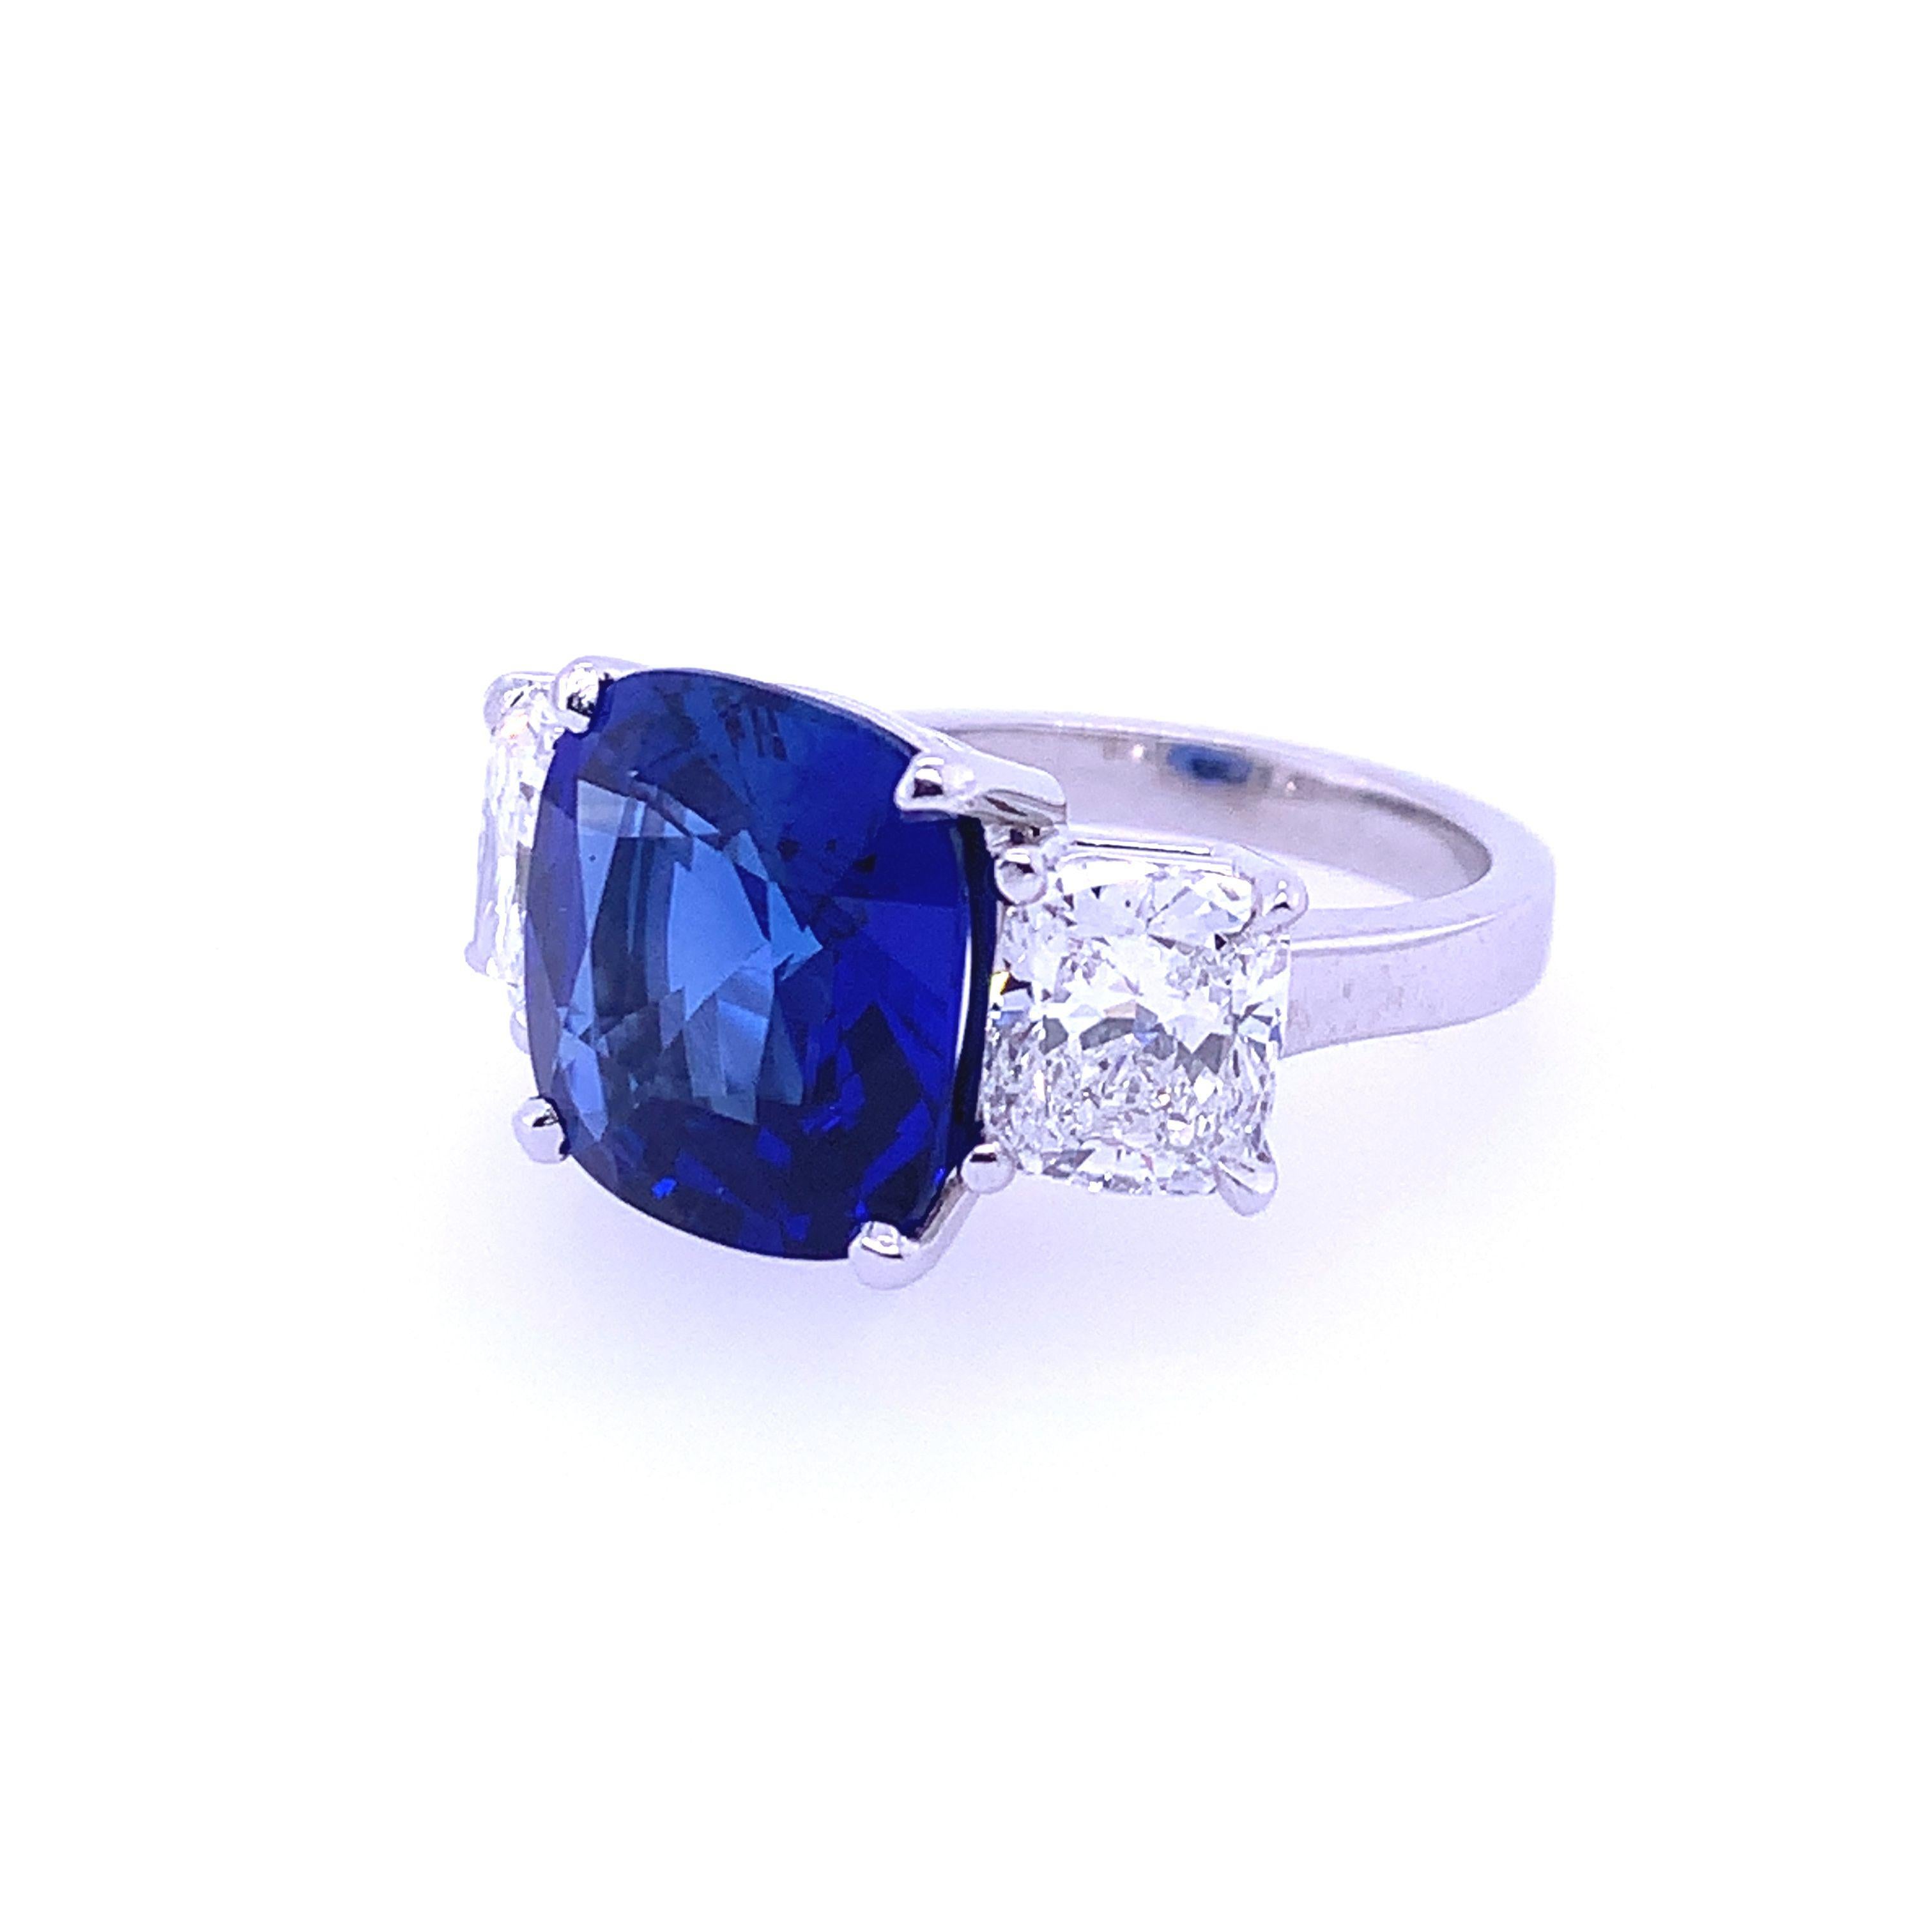 Mit zwei kissenförmigen Diamanten, die präzise geschliffen sind, um einen schillernden Ceylon-Saphir in der Mitte zu umrahmen, besticht dieser Drei-Steine-Ring aus Platin durch zeitlose Schönheit und Liebe zum Detail. Mit einem AGL-zertifizierten,